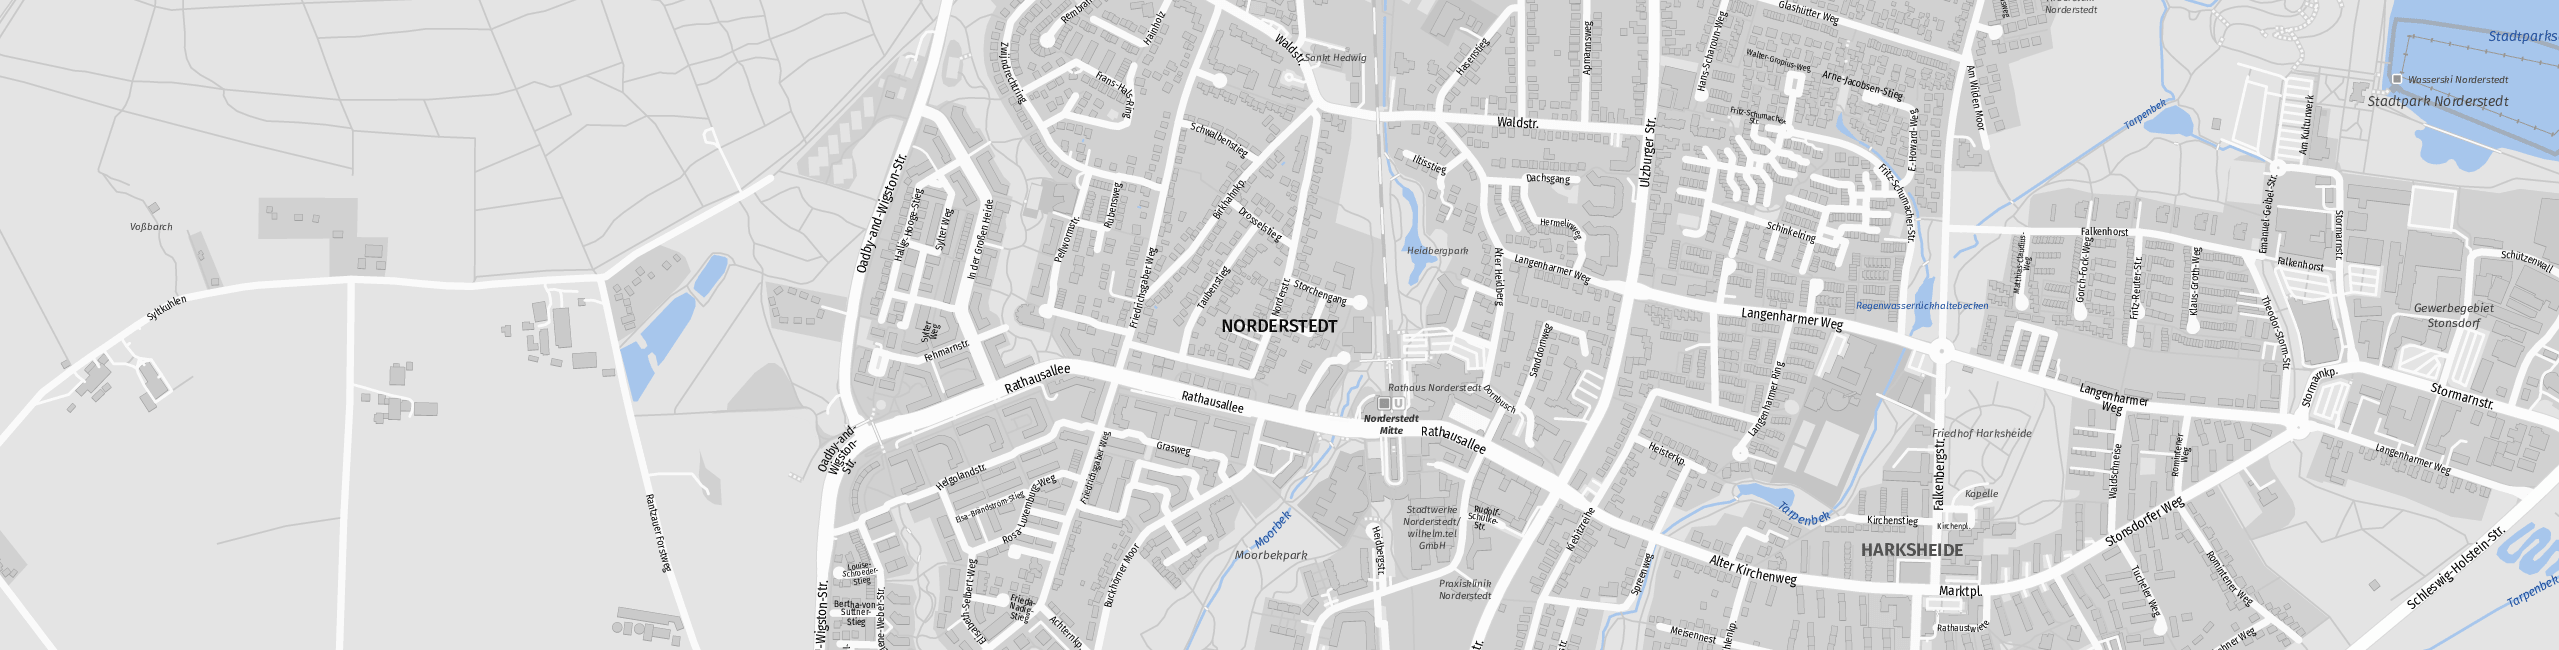 Stadtplan Norderstedt zum Downloaden.